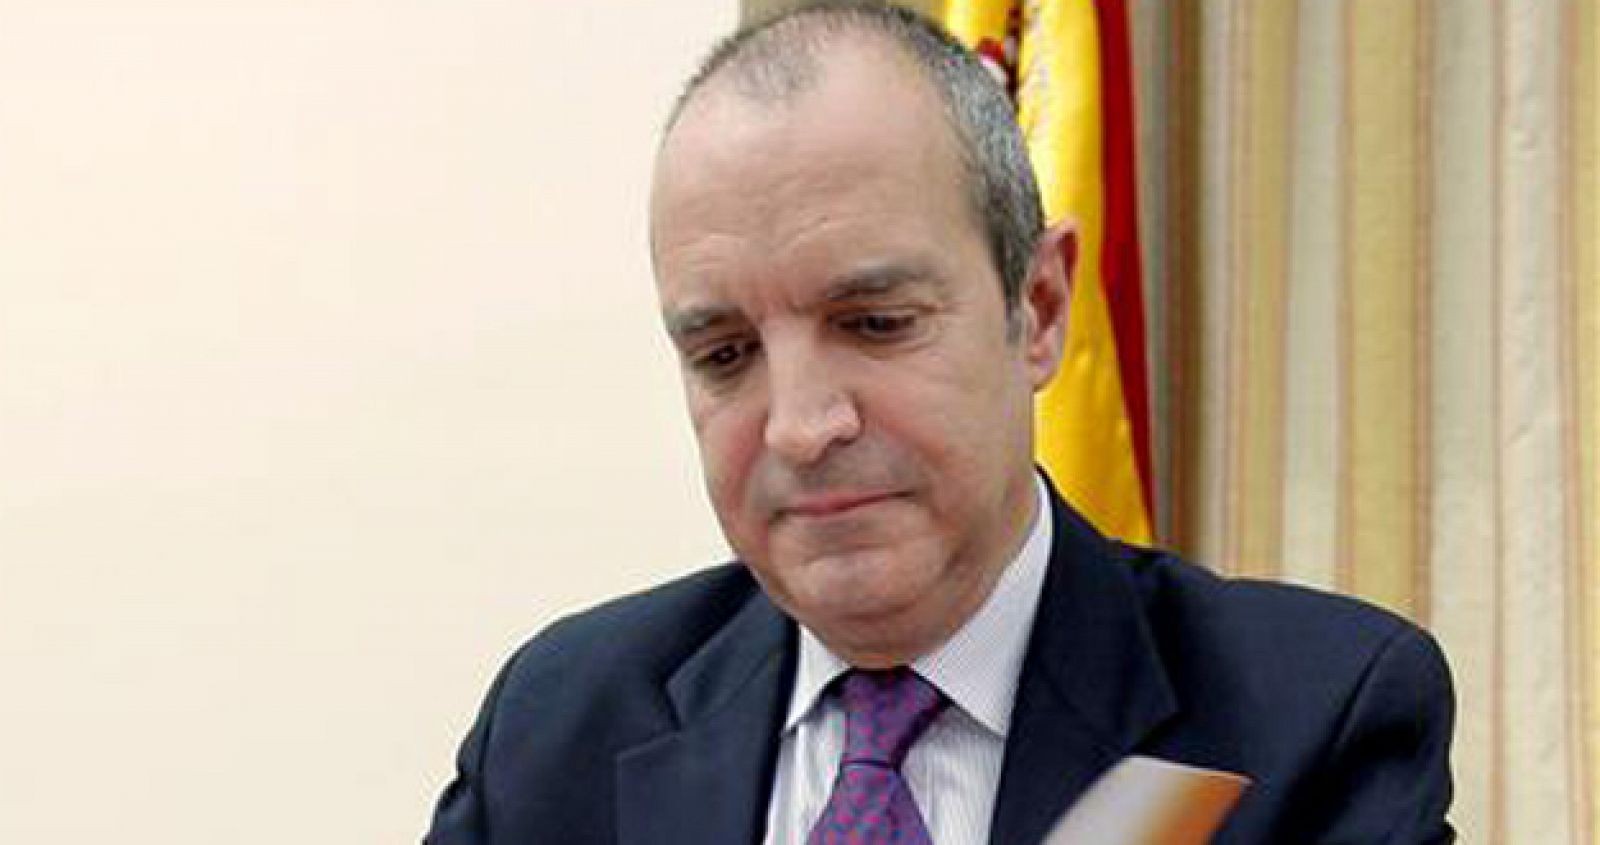 El presidente de la Corporación RTVE, Luis Fernández, ha comparecido ante la Comisión Mixta de Control, donde ha defendido los medios de comunicación públicos